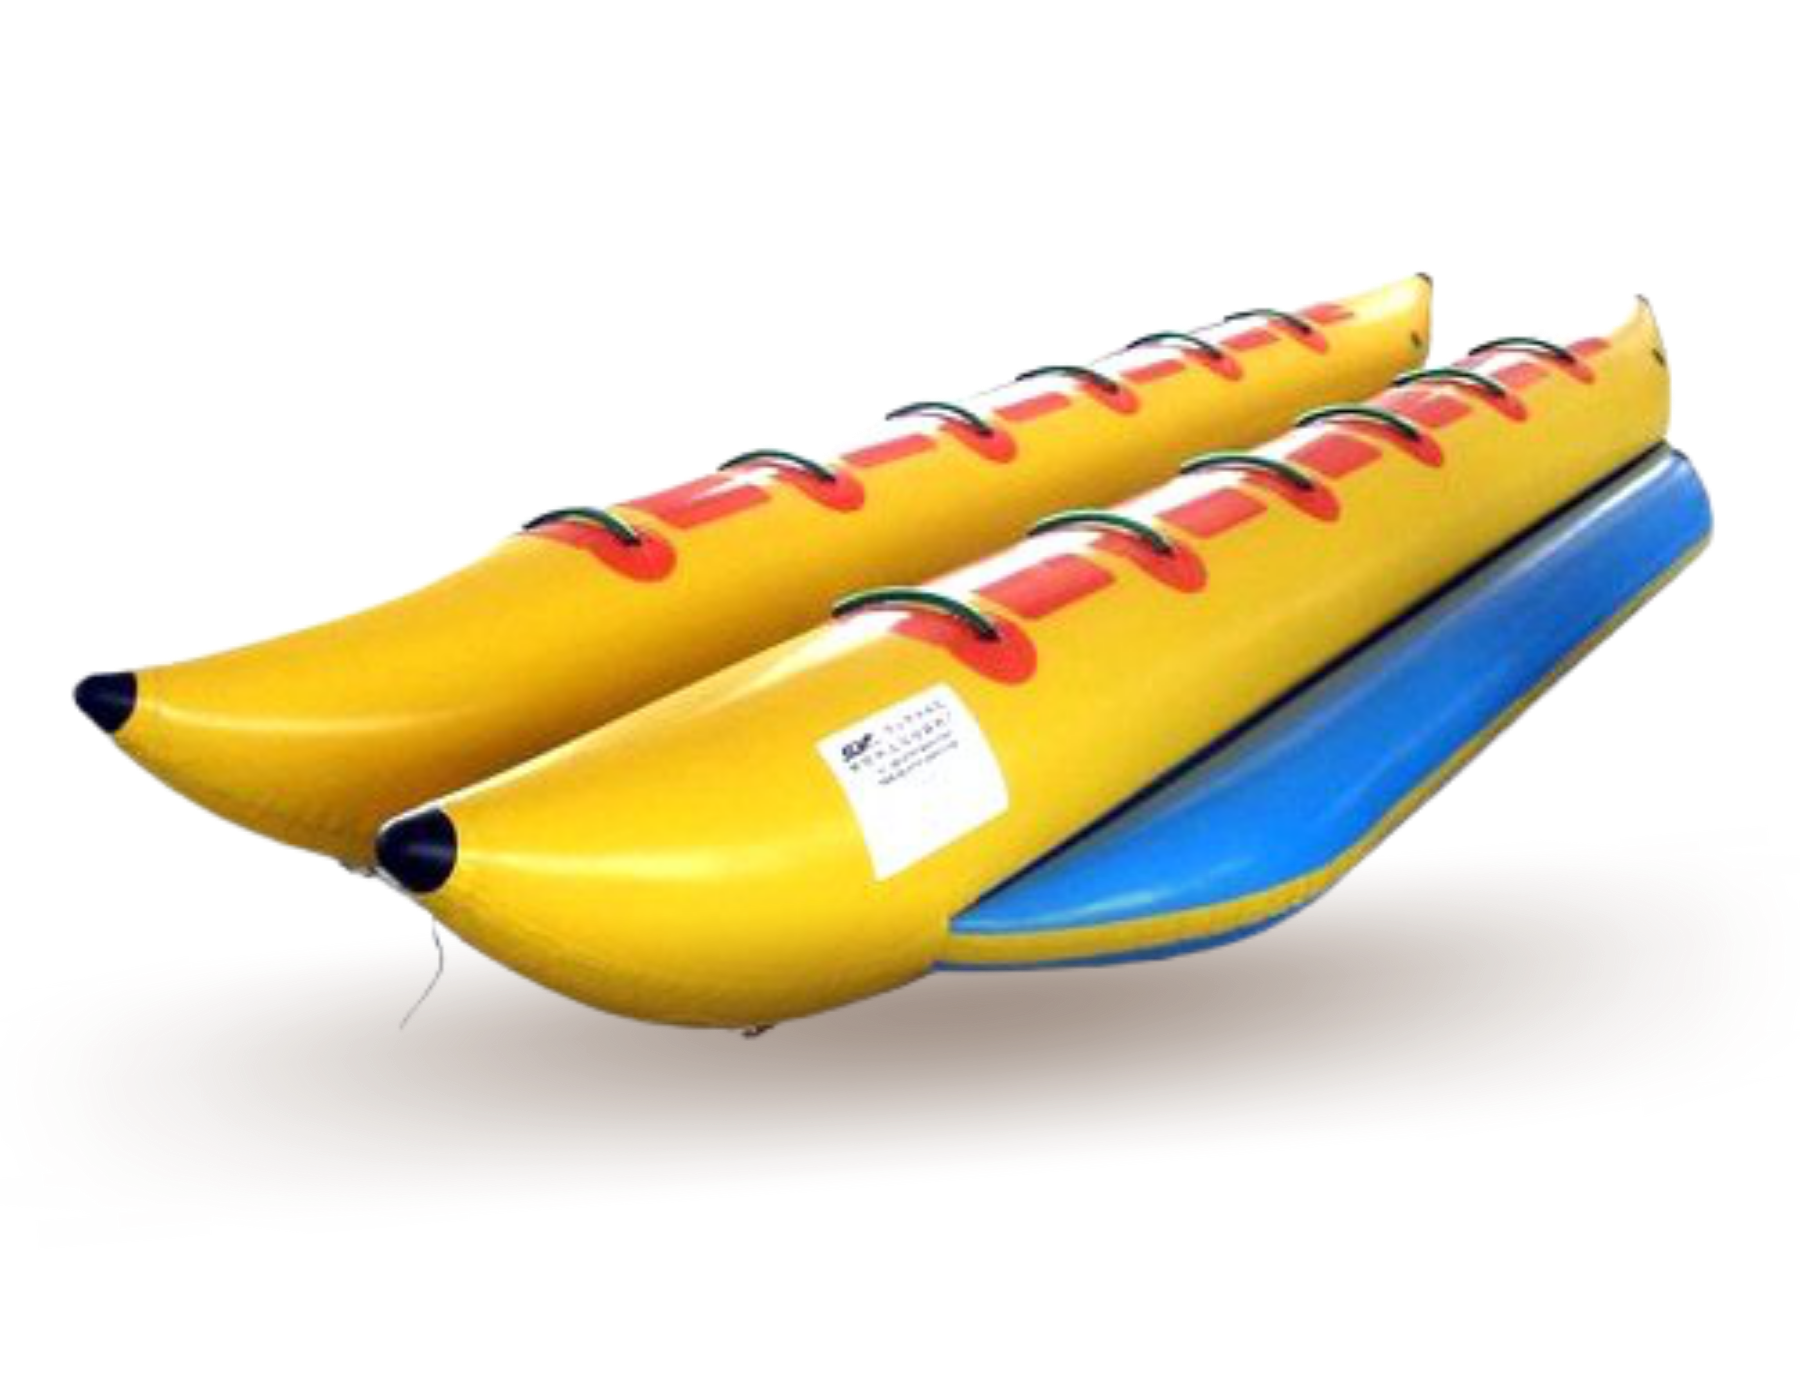 A banana boat